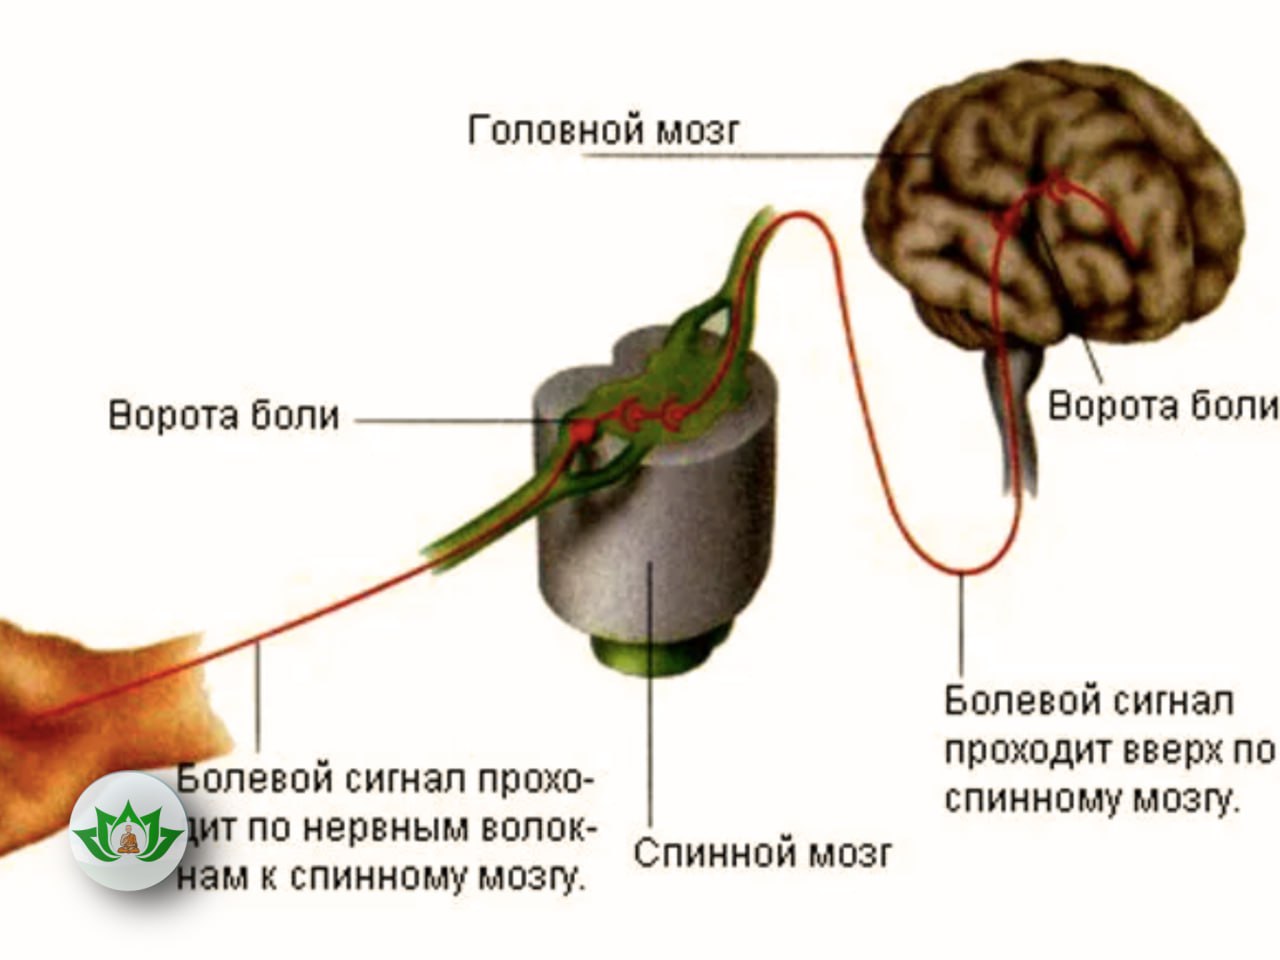 Почему чувствуется боль. Передача нервного импульса в мозг. Передача нервного импульса в головной мозг. Путь передачи от рецепторов в головной мозг. Болевые рецепторы в мозге.